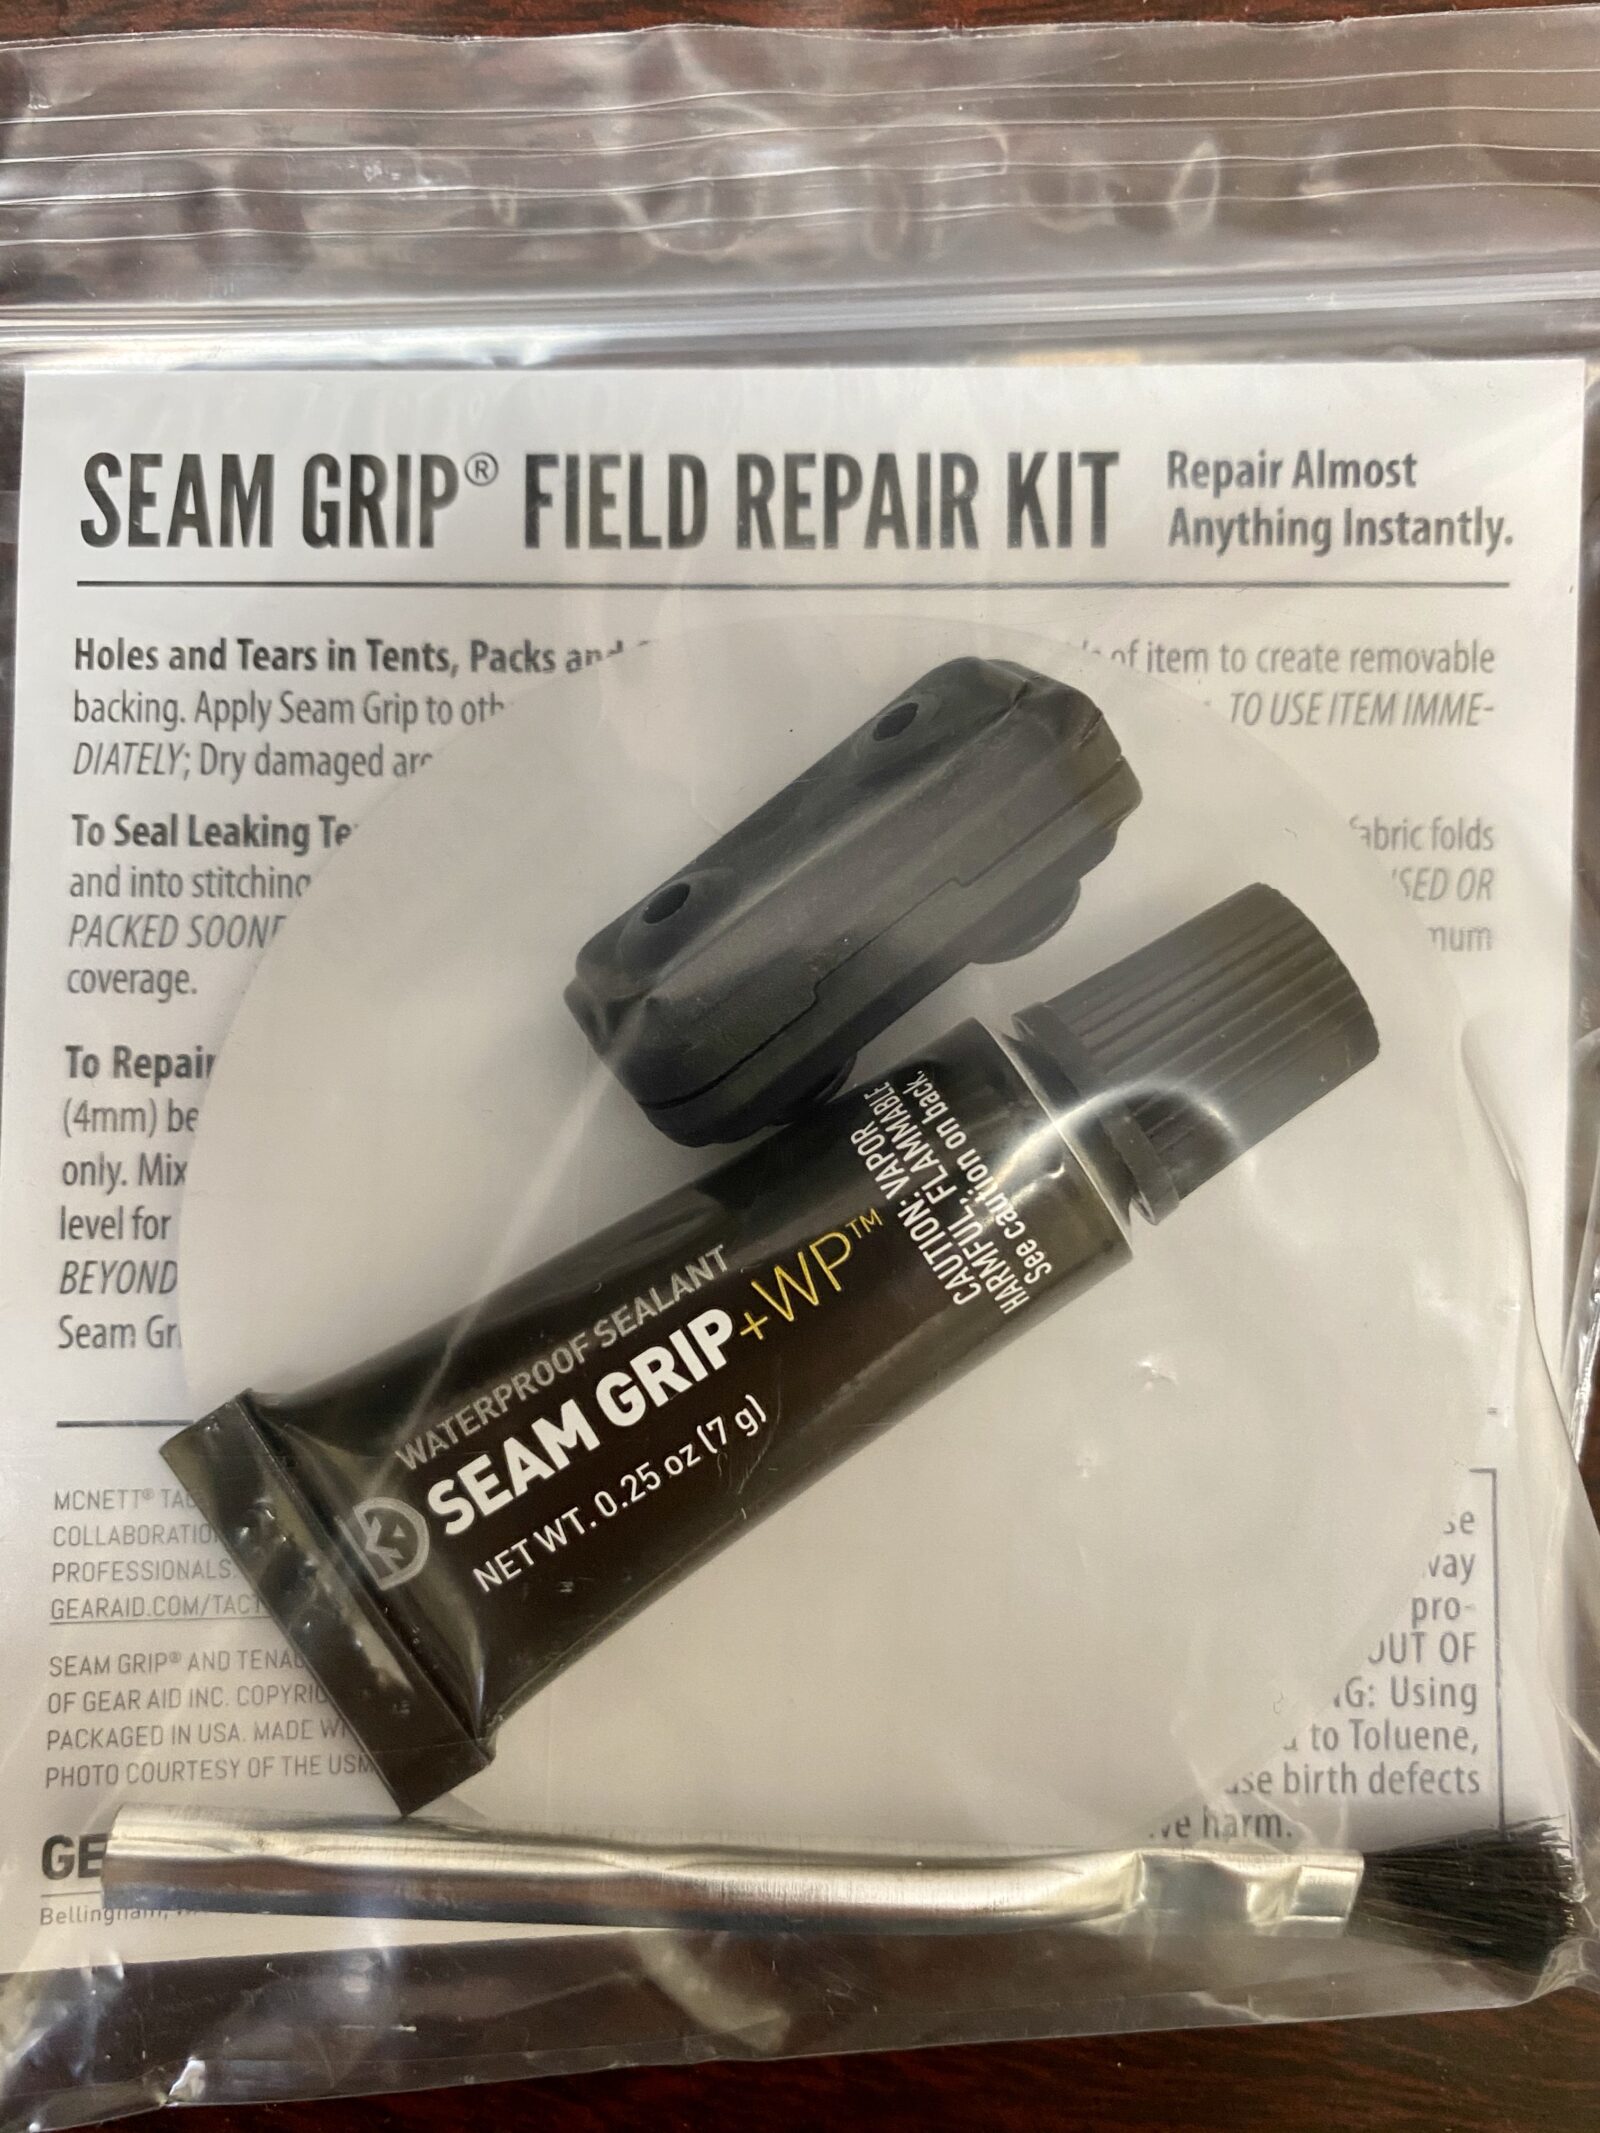 Seam Grip Field Repair Kit, Boot Repair